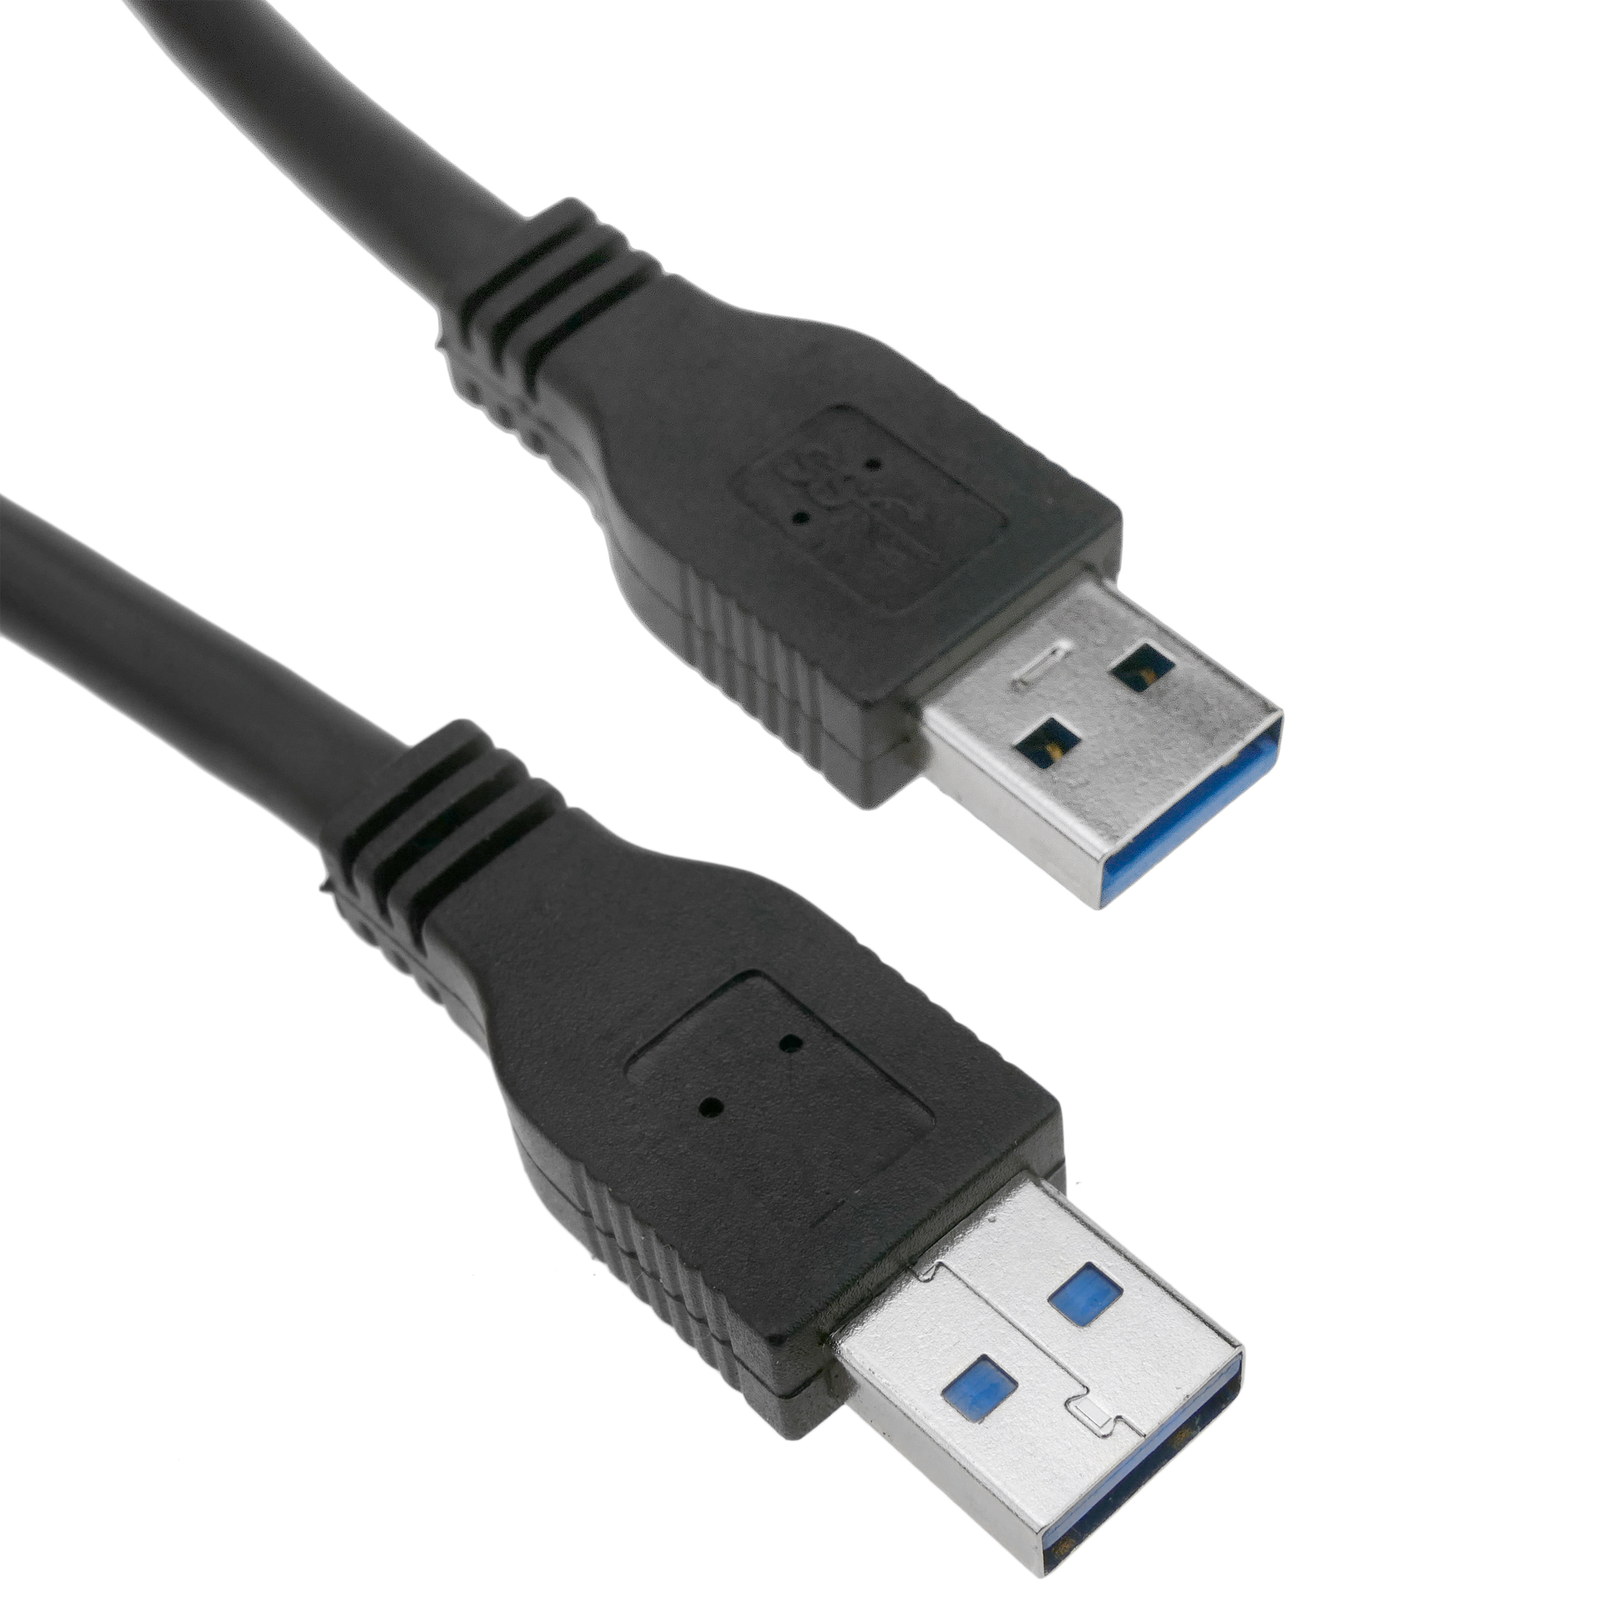 Cable alargador USB 3.0 de 1 m tipo A Macho a Hembra azul - Cablematic